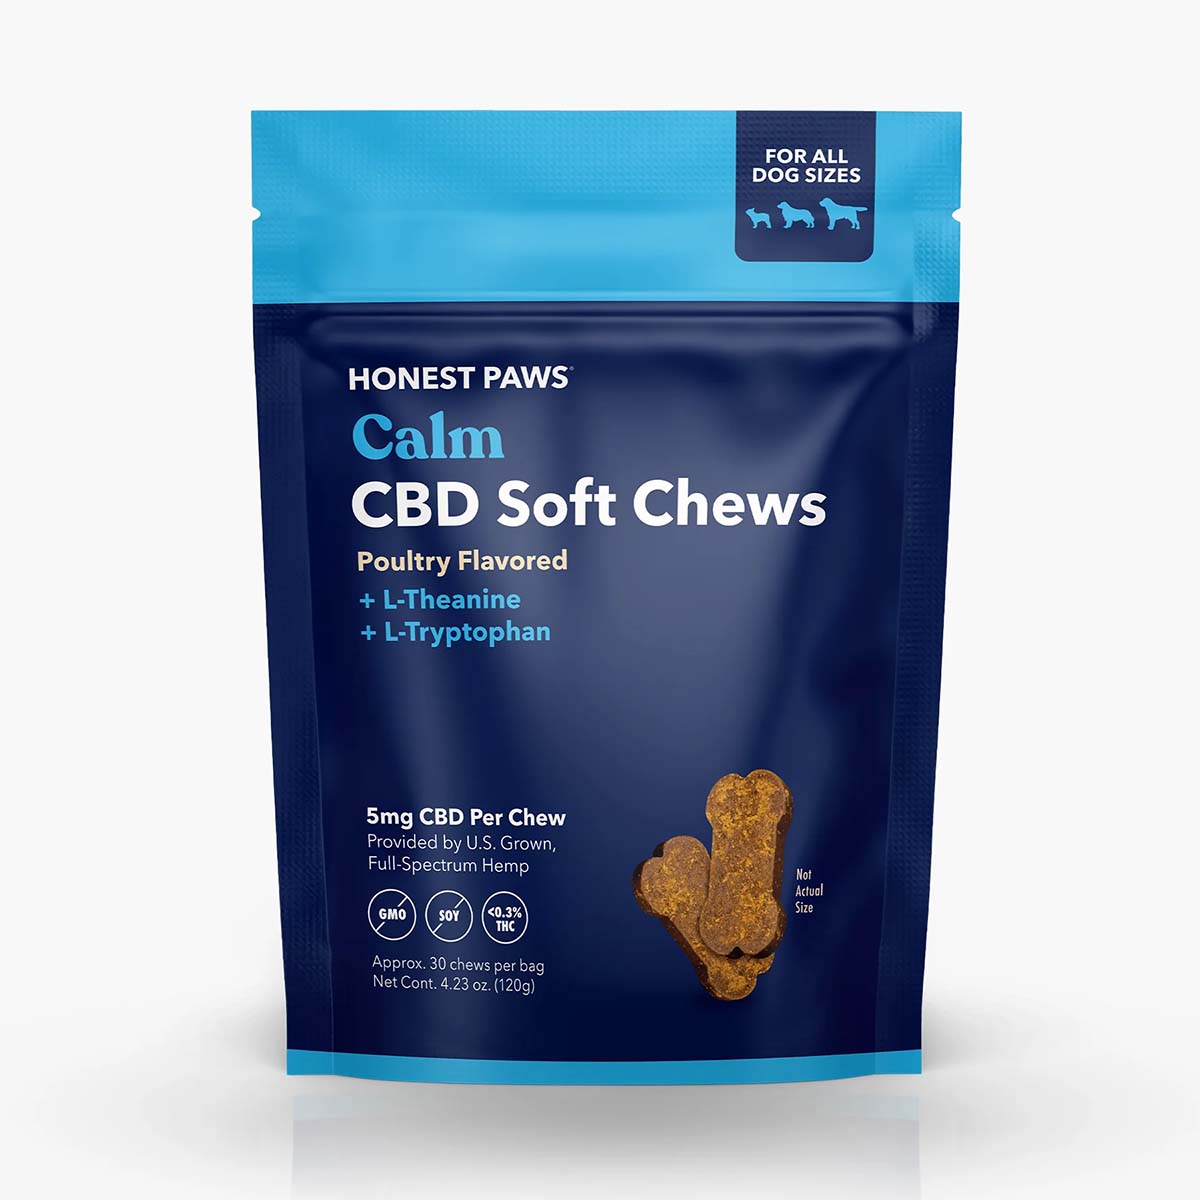 a blue bag of Honest Paws Calm Soft Chews dog treats